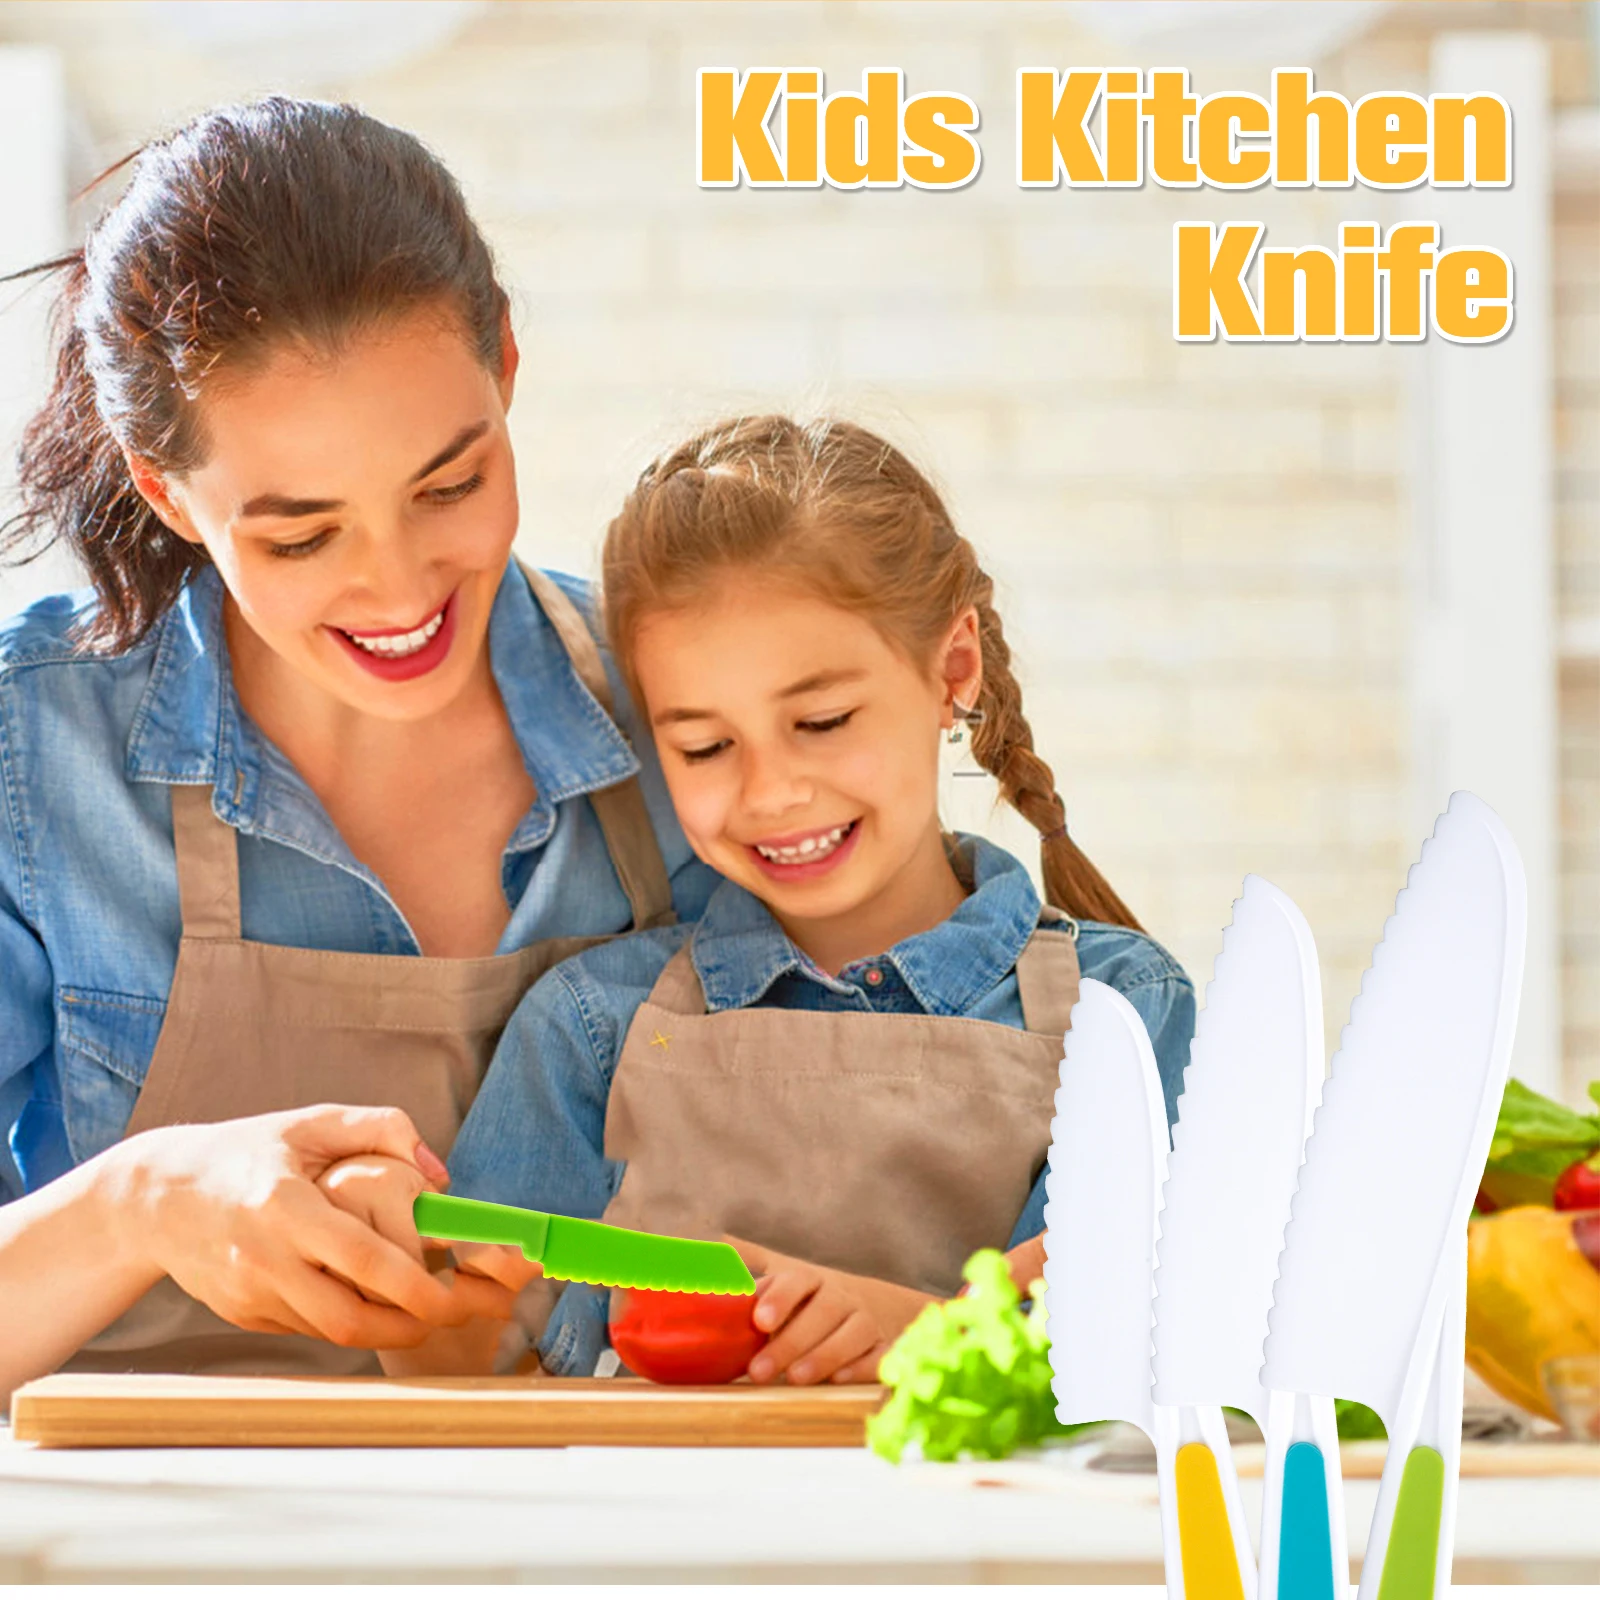 Набор кухонных ножей для детей, деревянные безопасные ножи для малышей, Многоразовый набор пластиковых ножей с безопасными для дерева зазубренными краями, Пластик